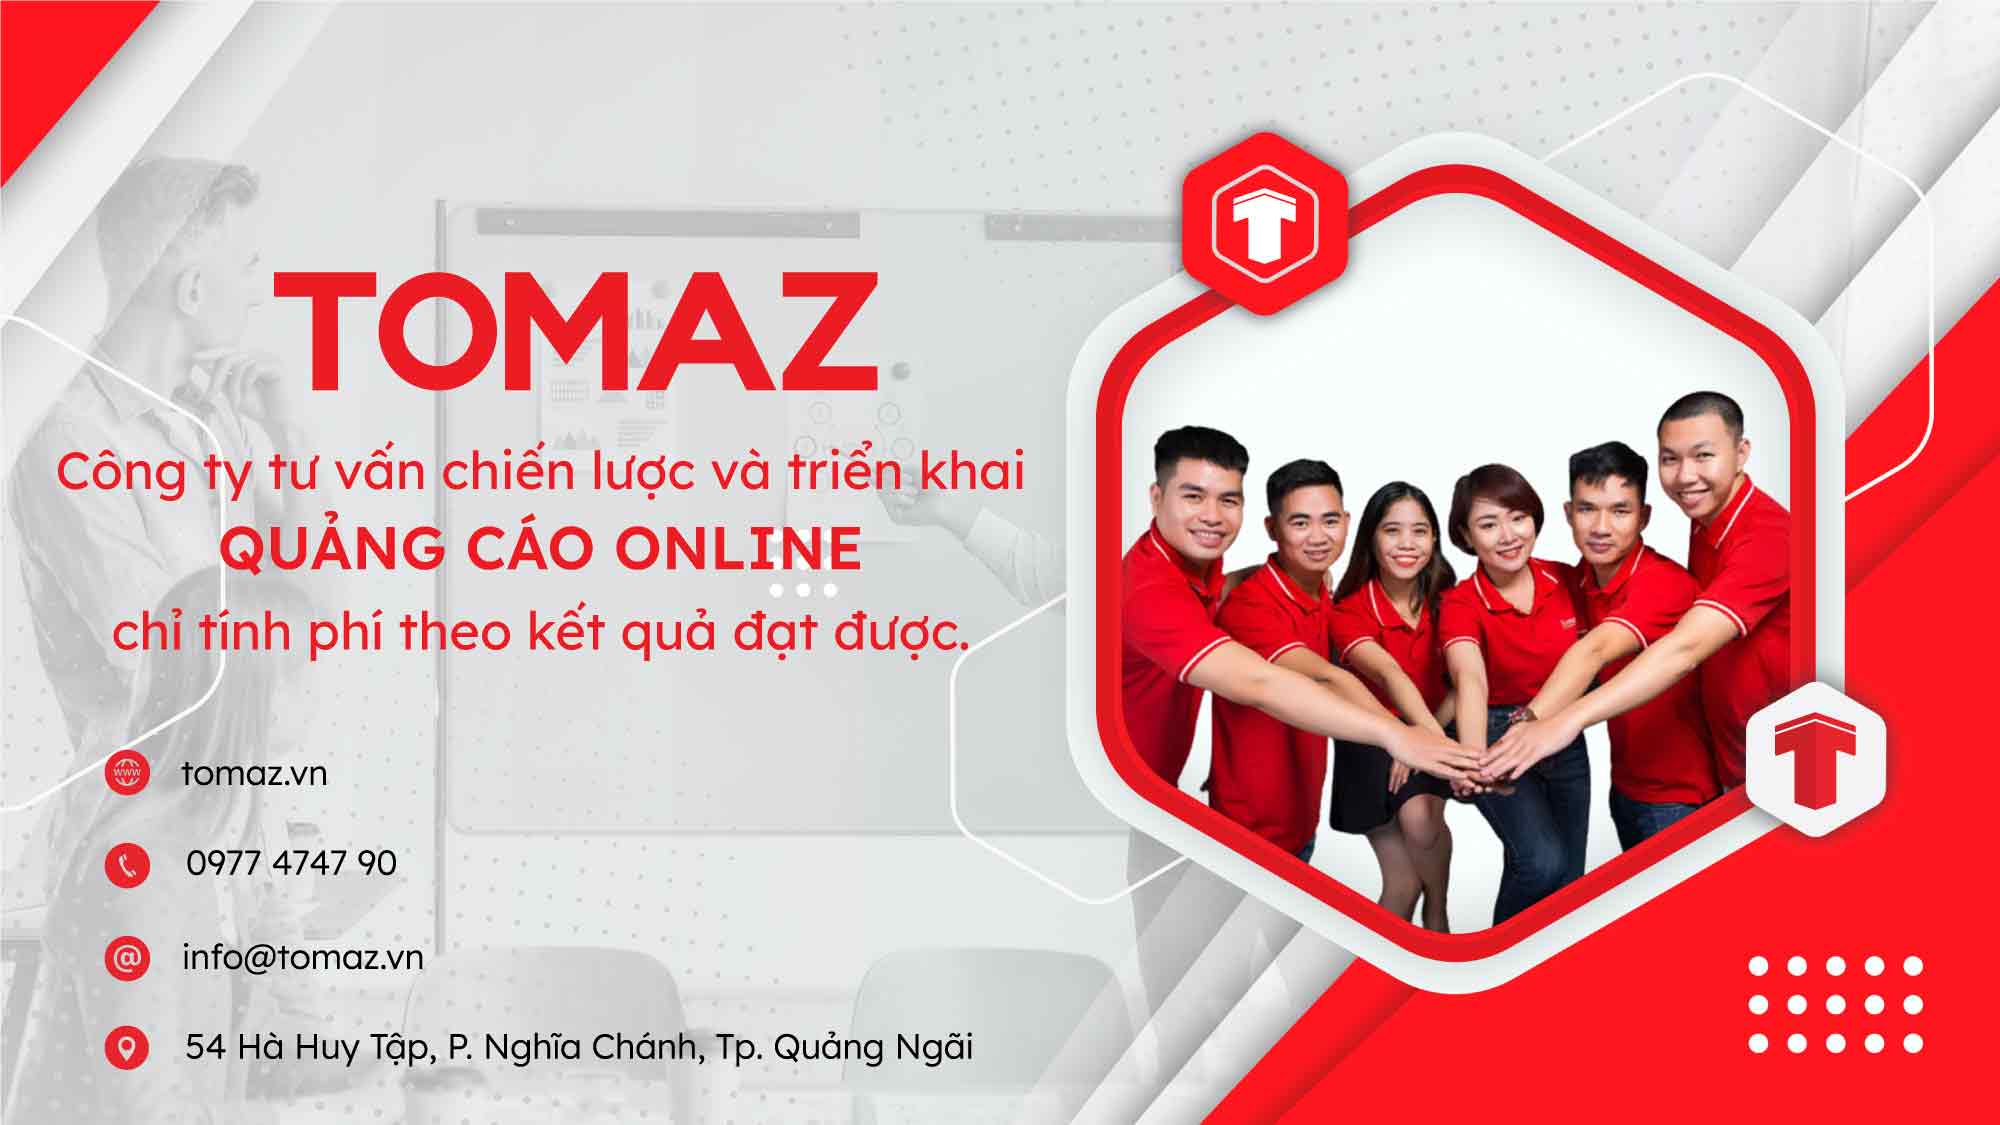 TOMAZ - Công ty quảng cáo online chỉ tính phí theo kết quả đạt được